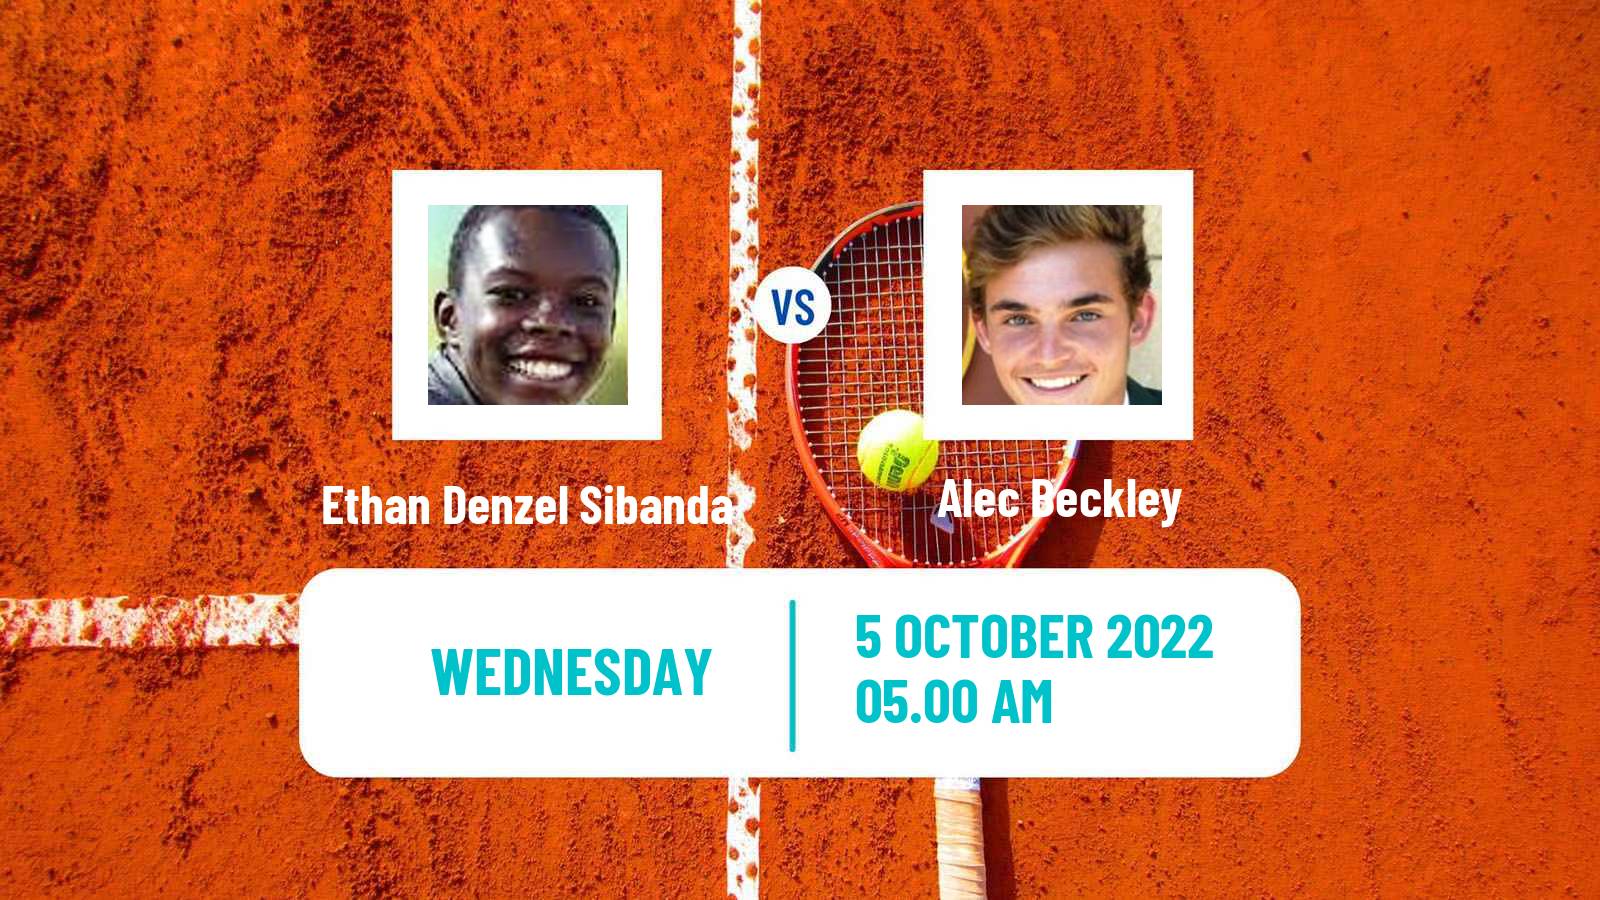 Tennis ITF Tournaments Ethan Denzel Sibanda - Alec Beckley